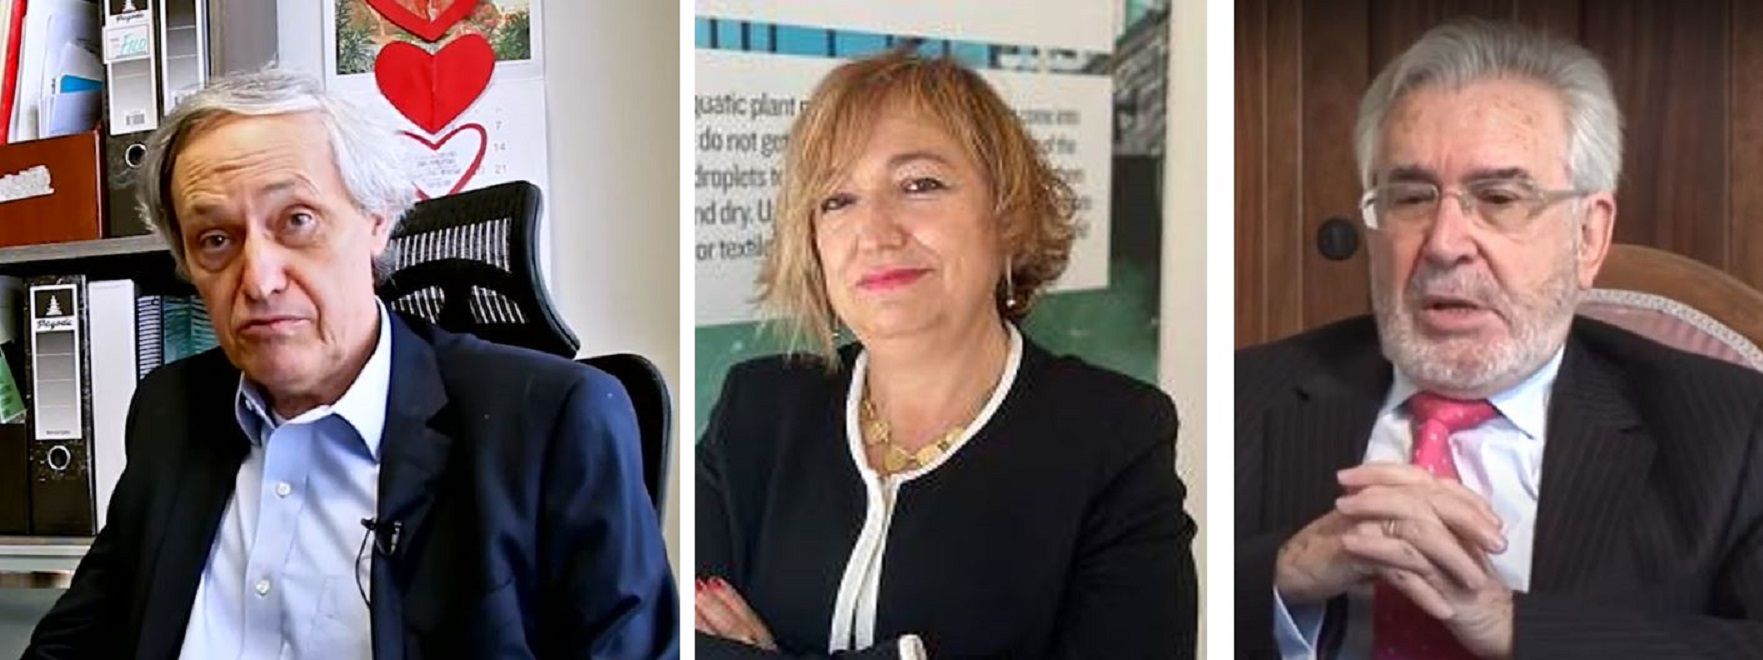 Los tres doctores ‘Honoris Causa’ que incorpora este viernes la Universidad de León son Manuel Atienza, Laura Lechuga y Dionisio Llamazares. | L.N.C.